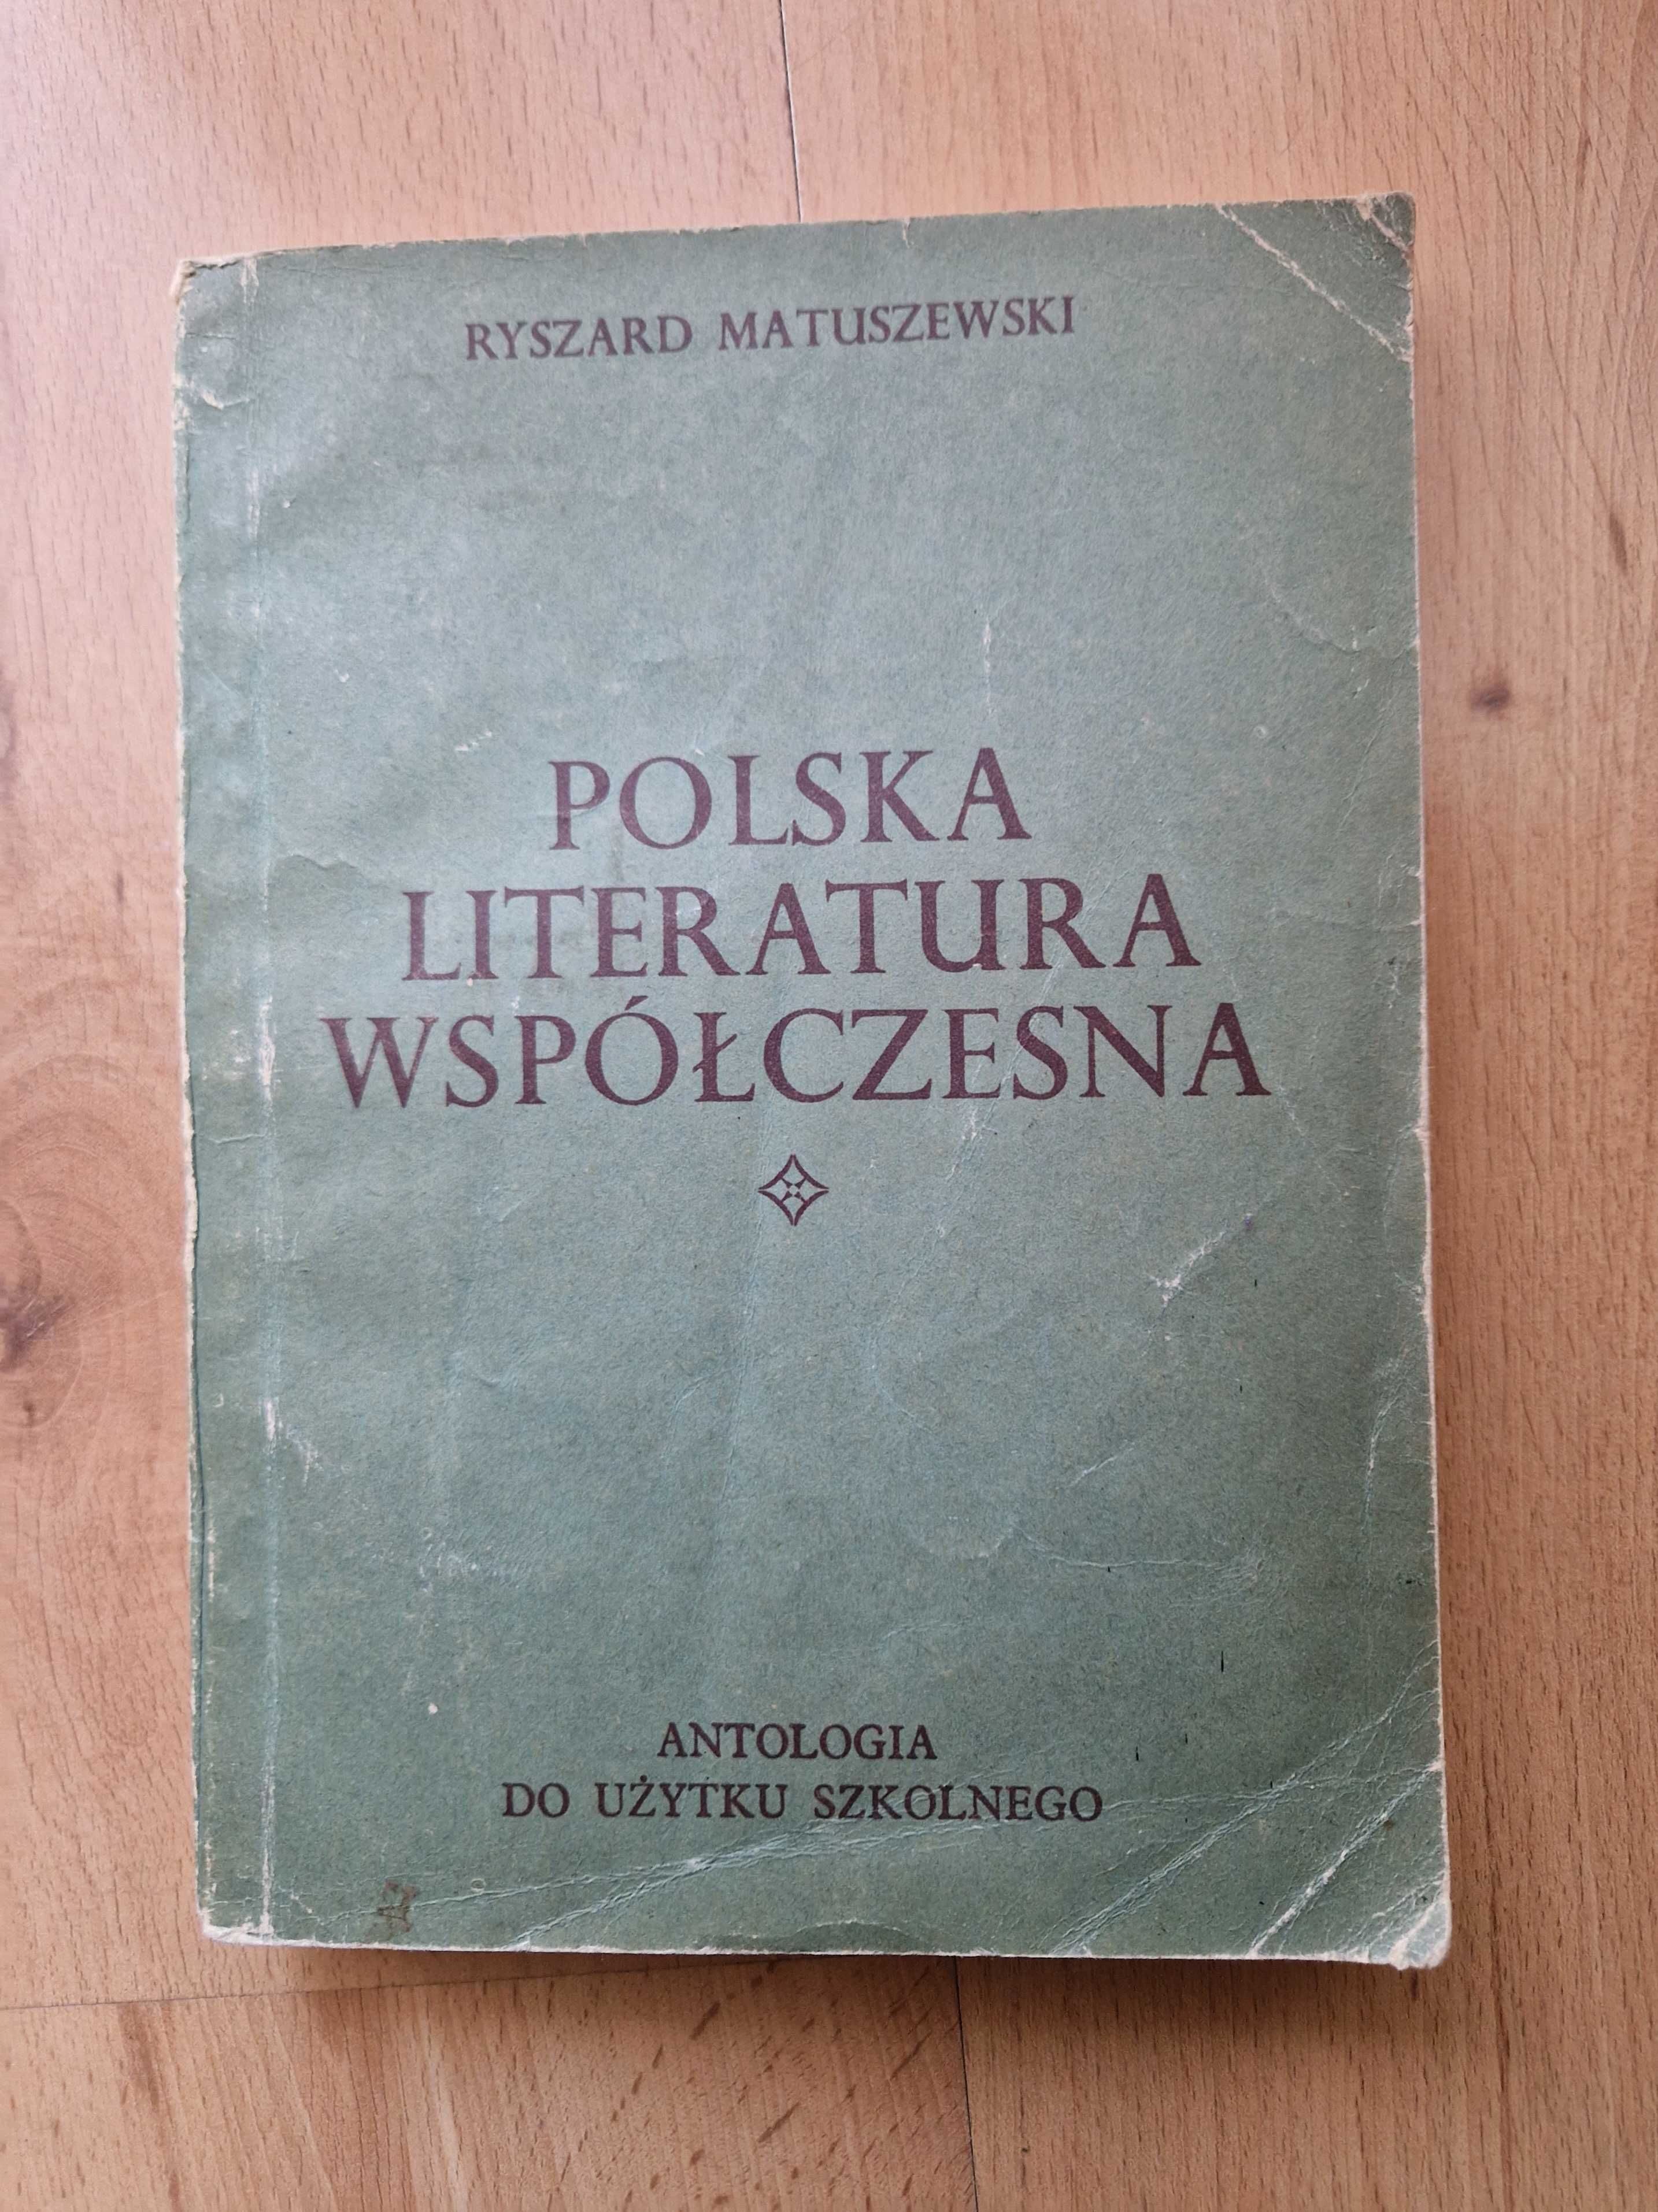 Polska literatura współczesna - Ryszard Matuszewski NIECZYTANA!